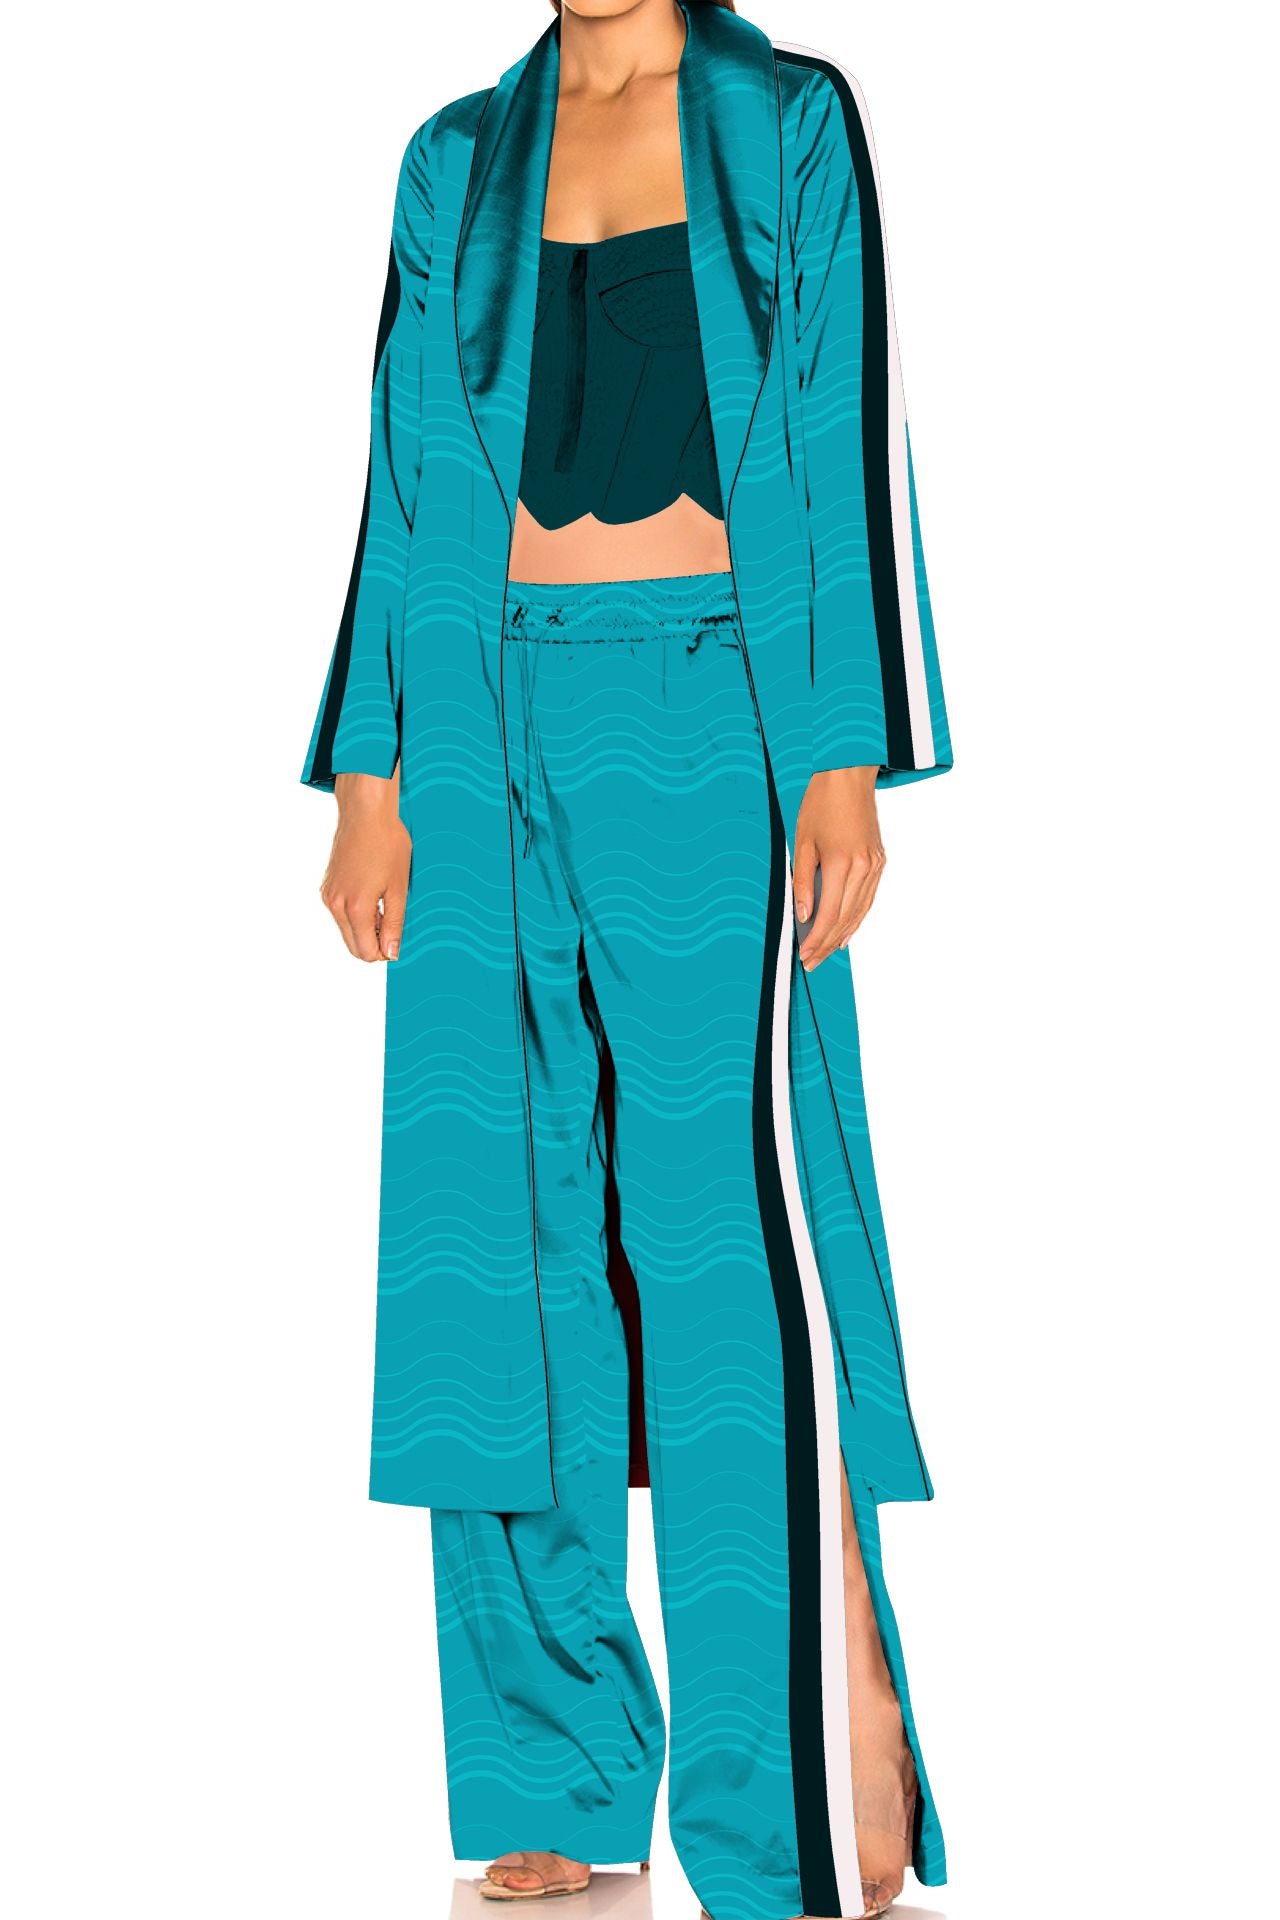 "women's pajama set with robe" "silk dress pajamas" "Kyle X Shahida" "silk pajama robe set"